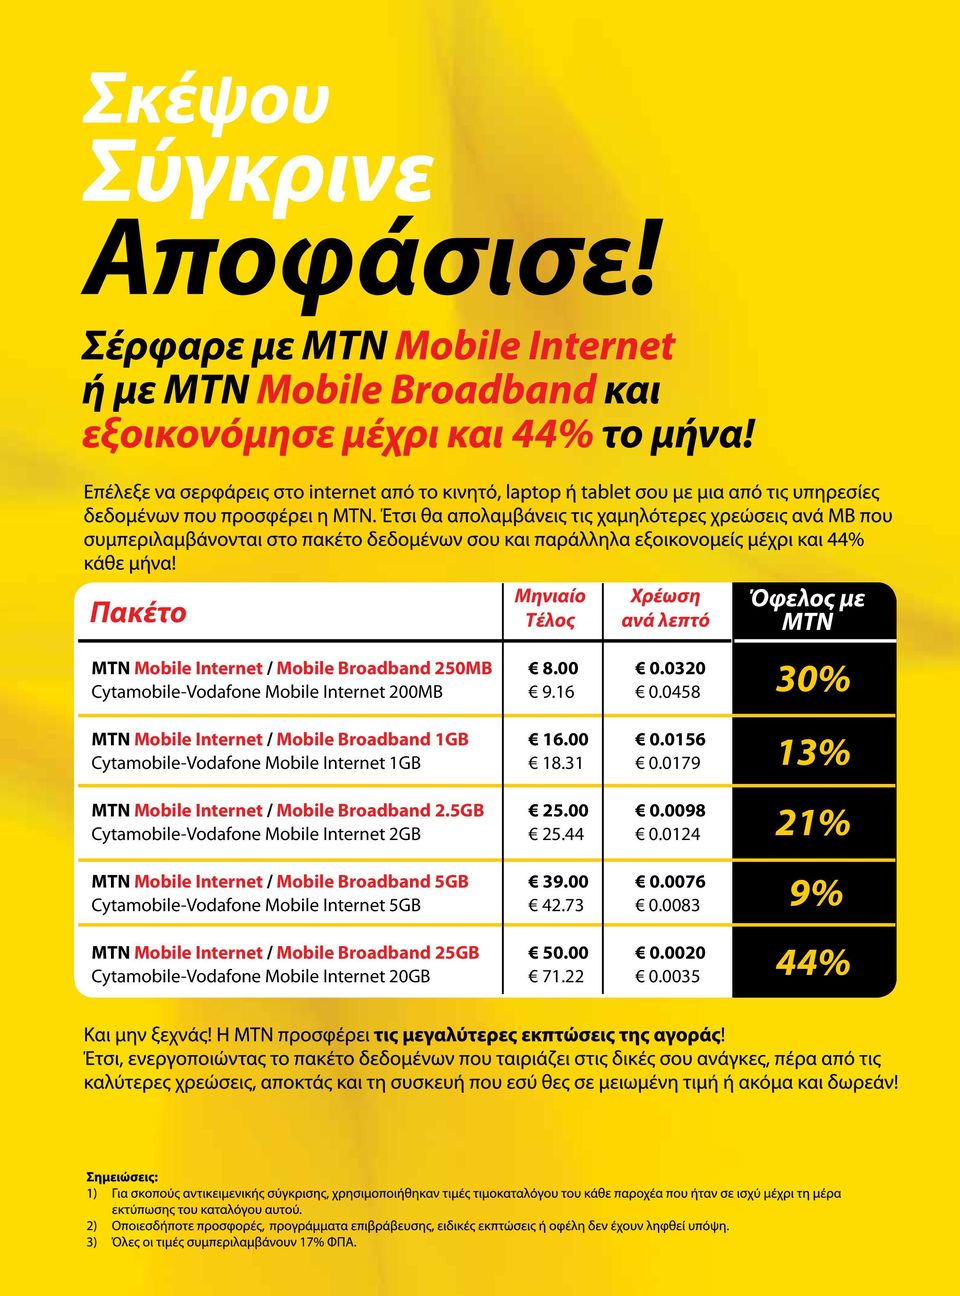 5GB 25.00 0.0098 Cytamobile-Vodafone Mobile Internet 2GB 25.44 0.0124 MTN Mobile Internet / Mobile Broadband 5GB 39.00 0.0076 Cytamobile-Vodafone Mobile Internet 5GB 42.